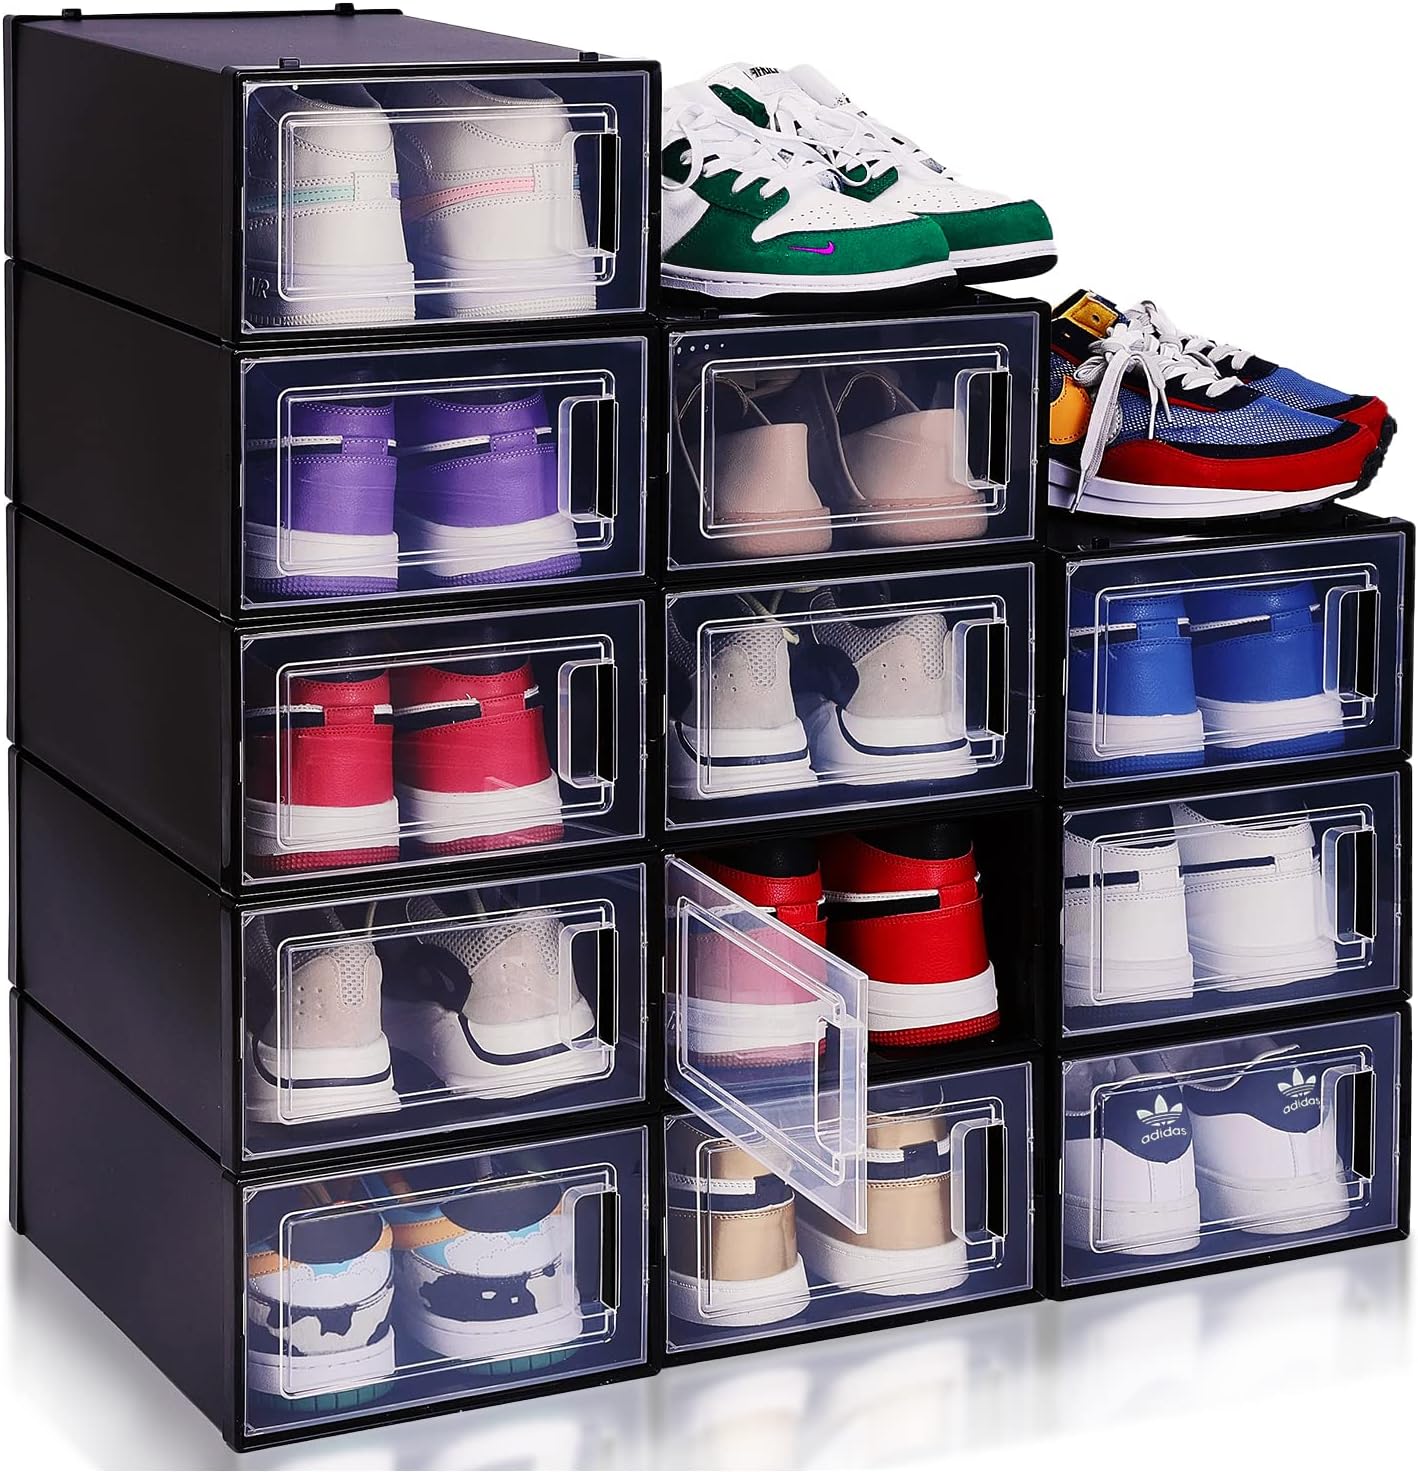 Cajas Zapatos Transparentes Primark: Organiza tus zapatos con estilo y practicidad